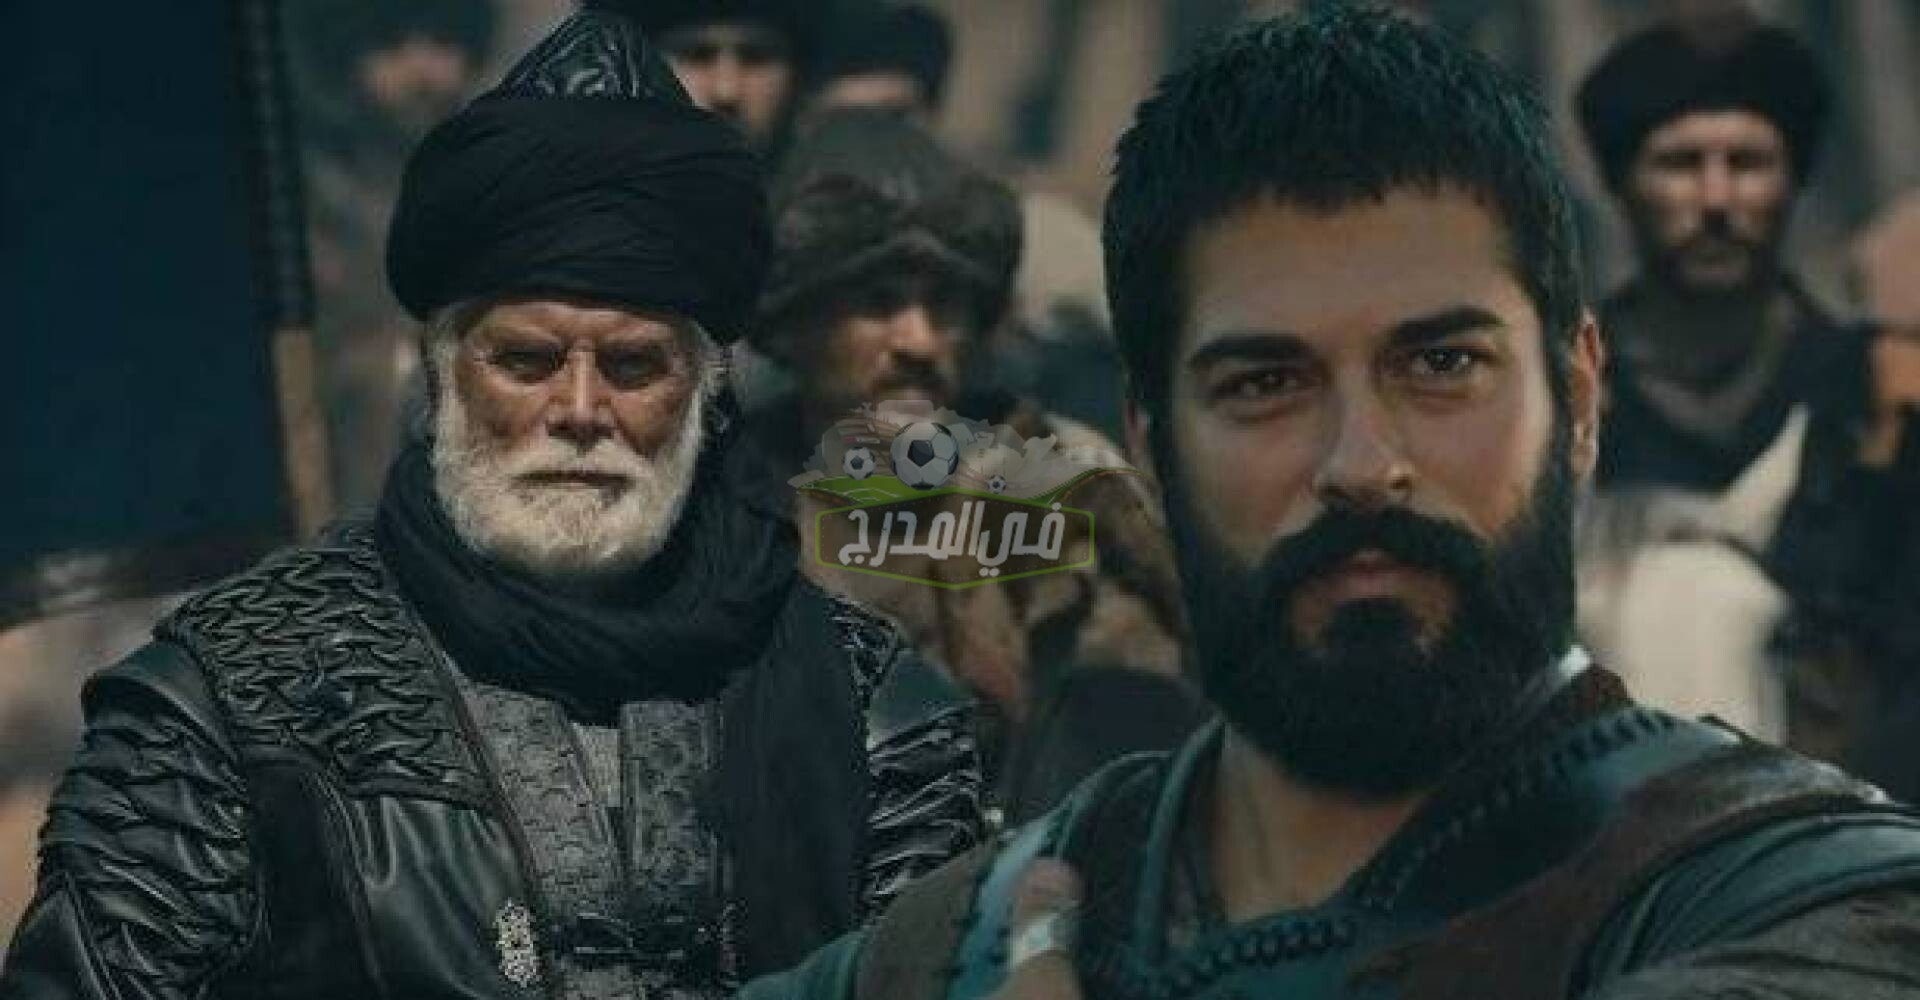 قيامة عثمان الحلقة 40 على قناة atv وموقع النور لعشاق الدراما التركية